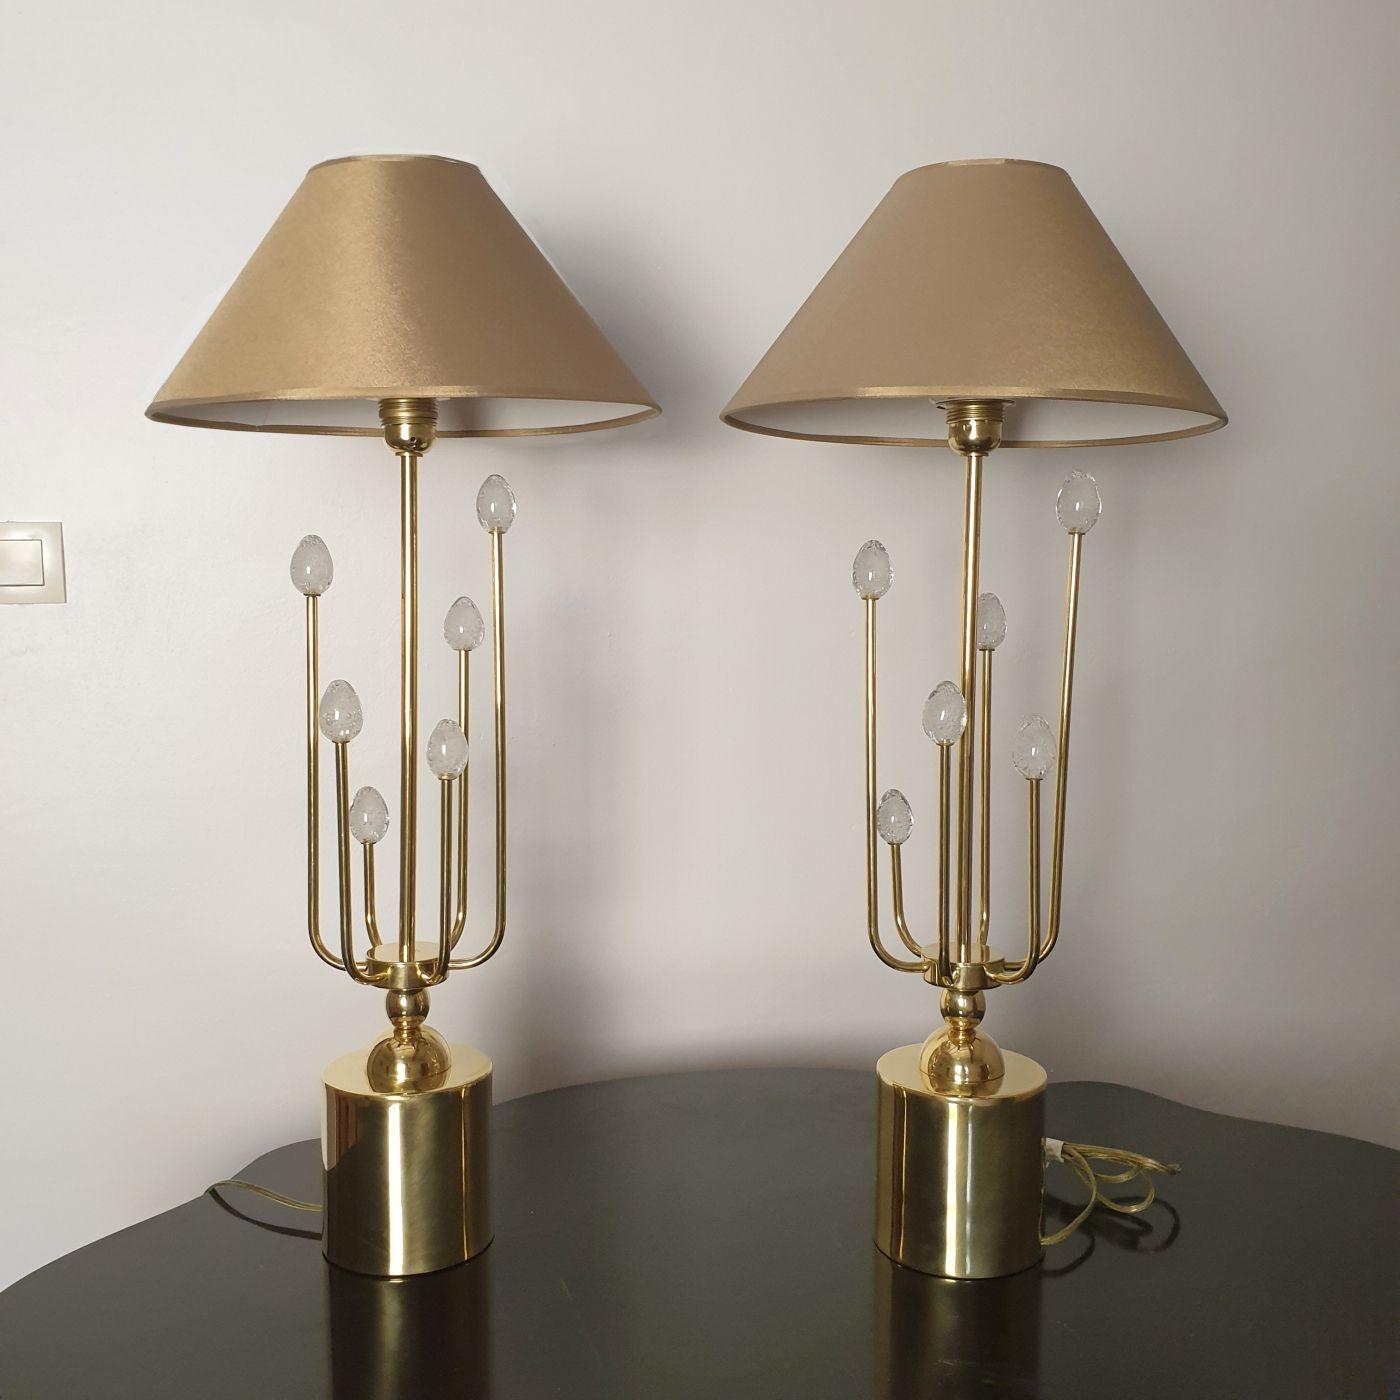 Paire de lampes de table modernes du milieu du siècle, attribuées à Sciolari, Italie, années 1970.
La paire de lampes est entièrement réalisée en laiton poli.
Chaque lampe possède 6 tiges décoratives en laiton, de différentes hauteurs ; chacune